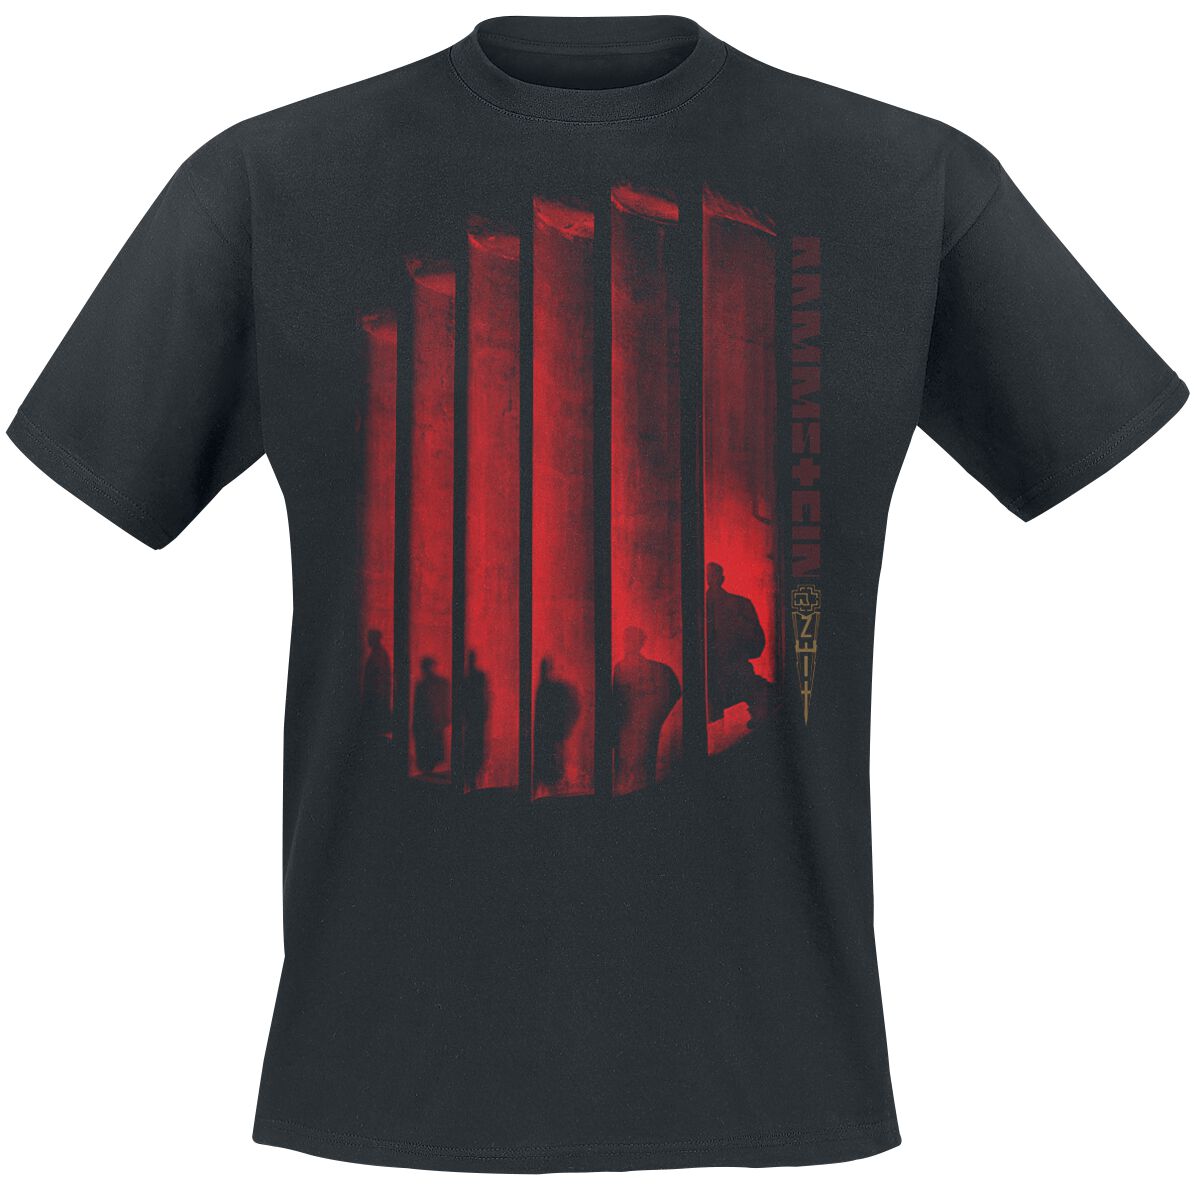 Rammstein T-Shirt - Schatten Ohne Licht - S bis 5XL - für Männer - Größe 3XL - schwarz  - Lizenziertes Merchandise!